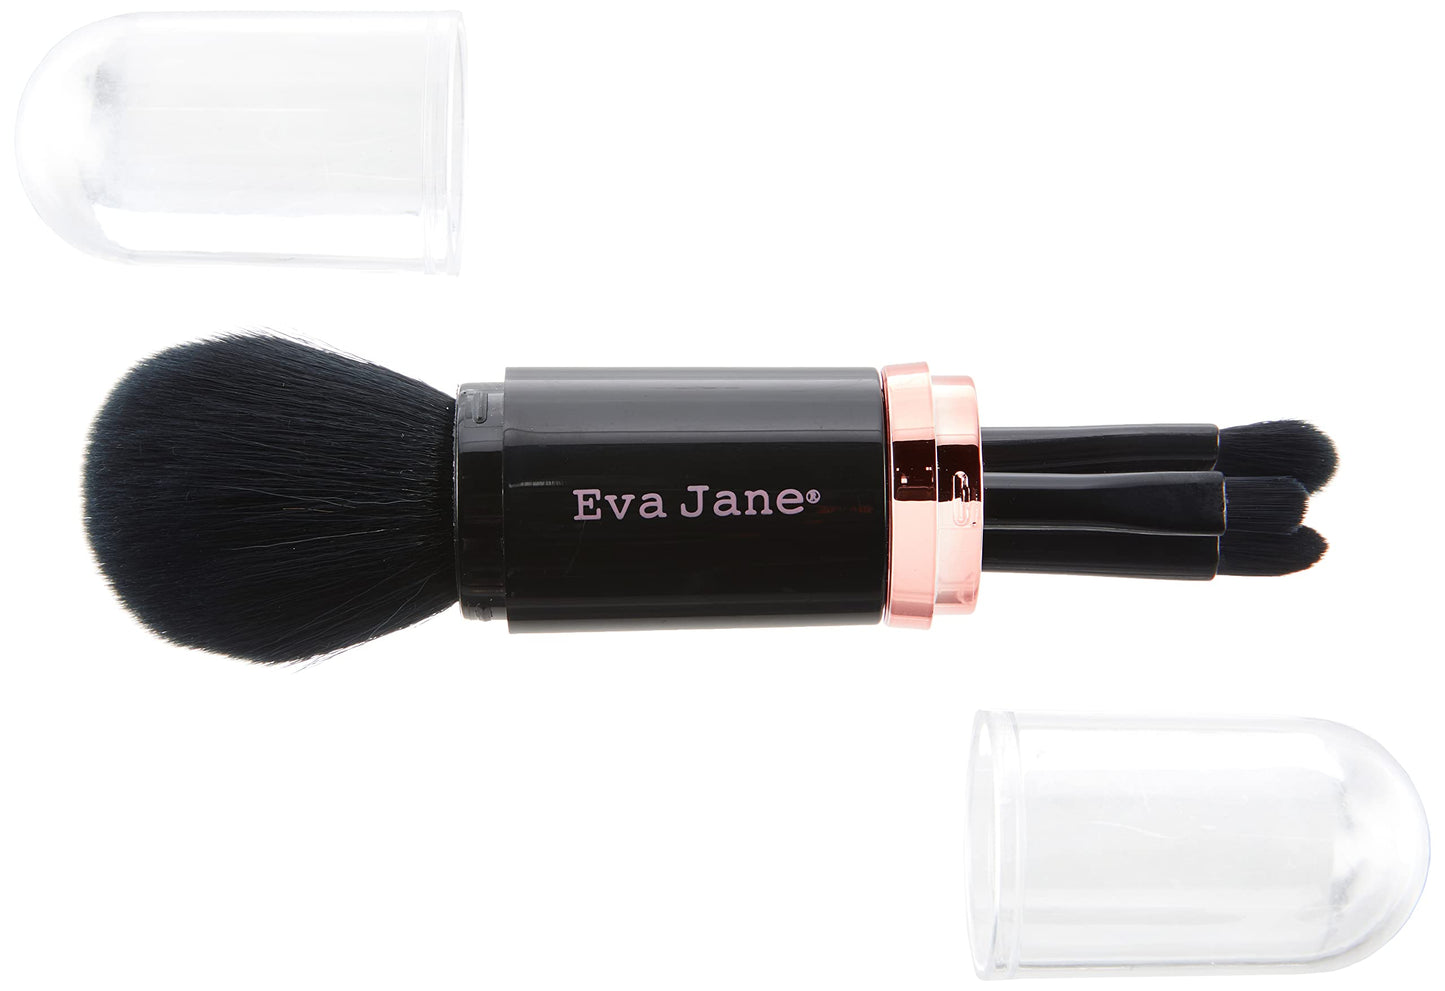 EVA JANE 4-in-1 Brush Set